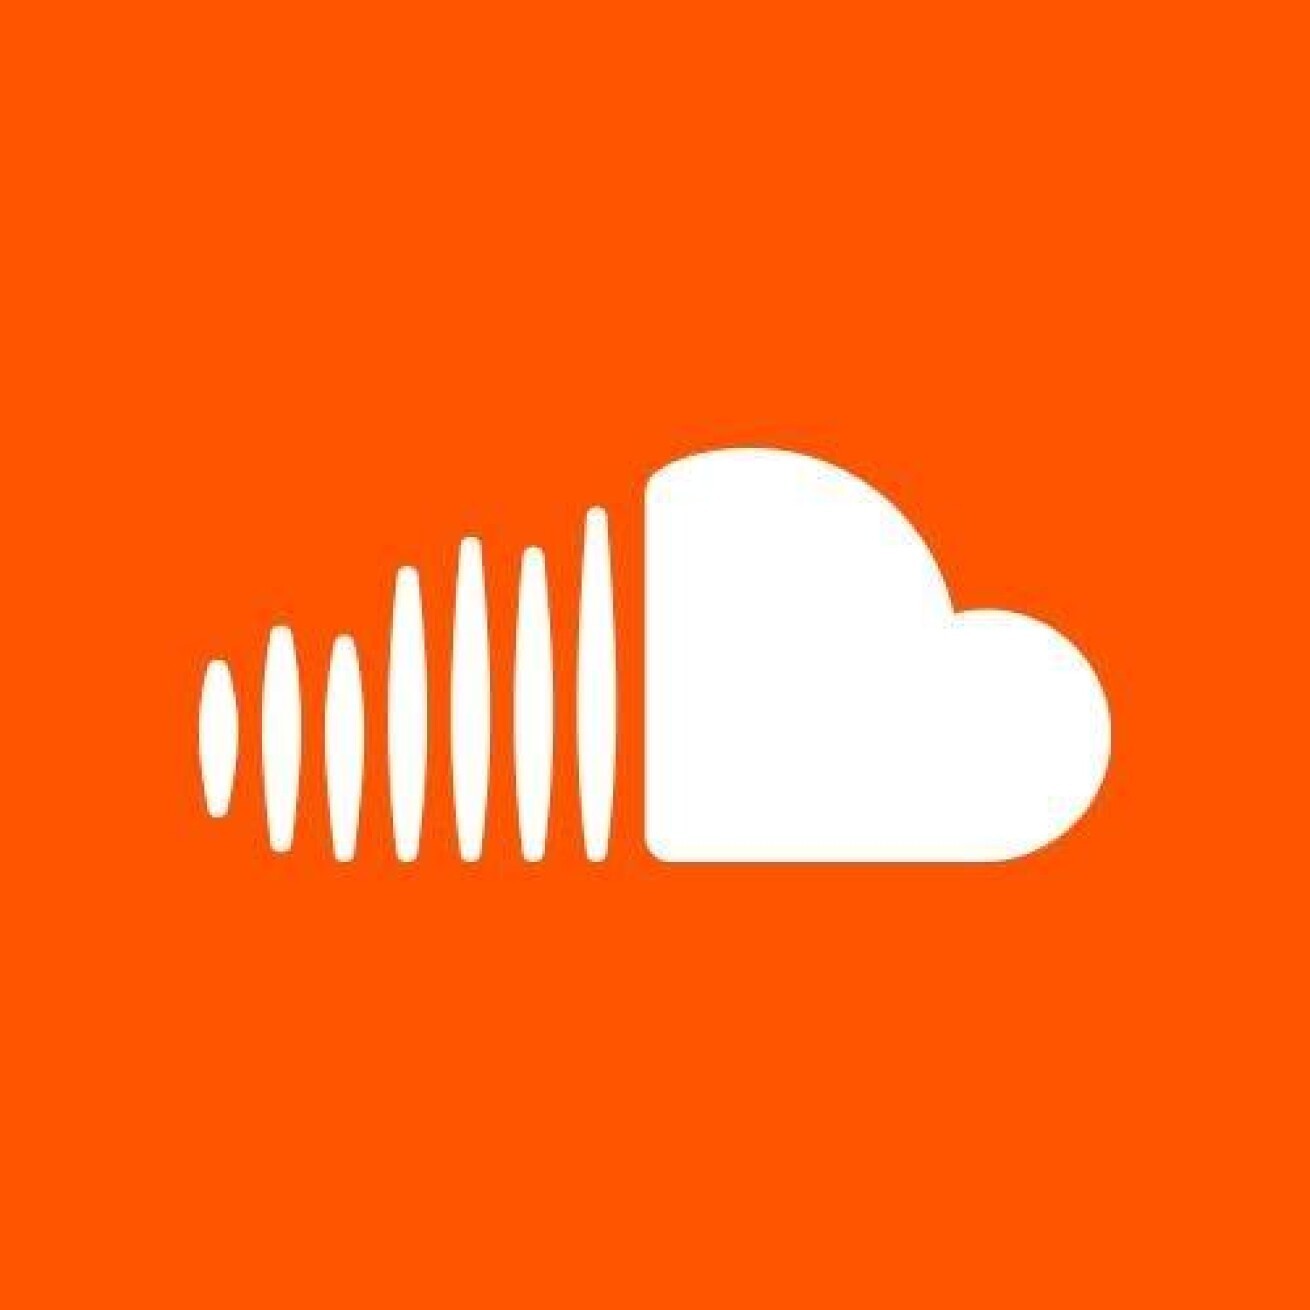 Iflyer Soundcloud サウンドクラウド 月額19 99ドル 約2 100円 で無制限オフラインアクセスできる Soundcloud Dj を発表 いつでもどこでもストリーミング可能に